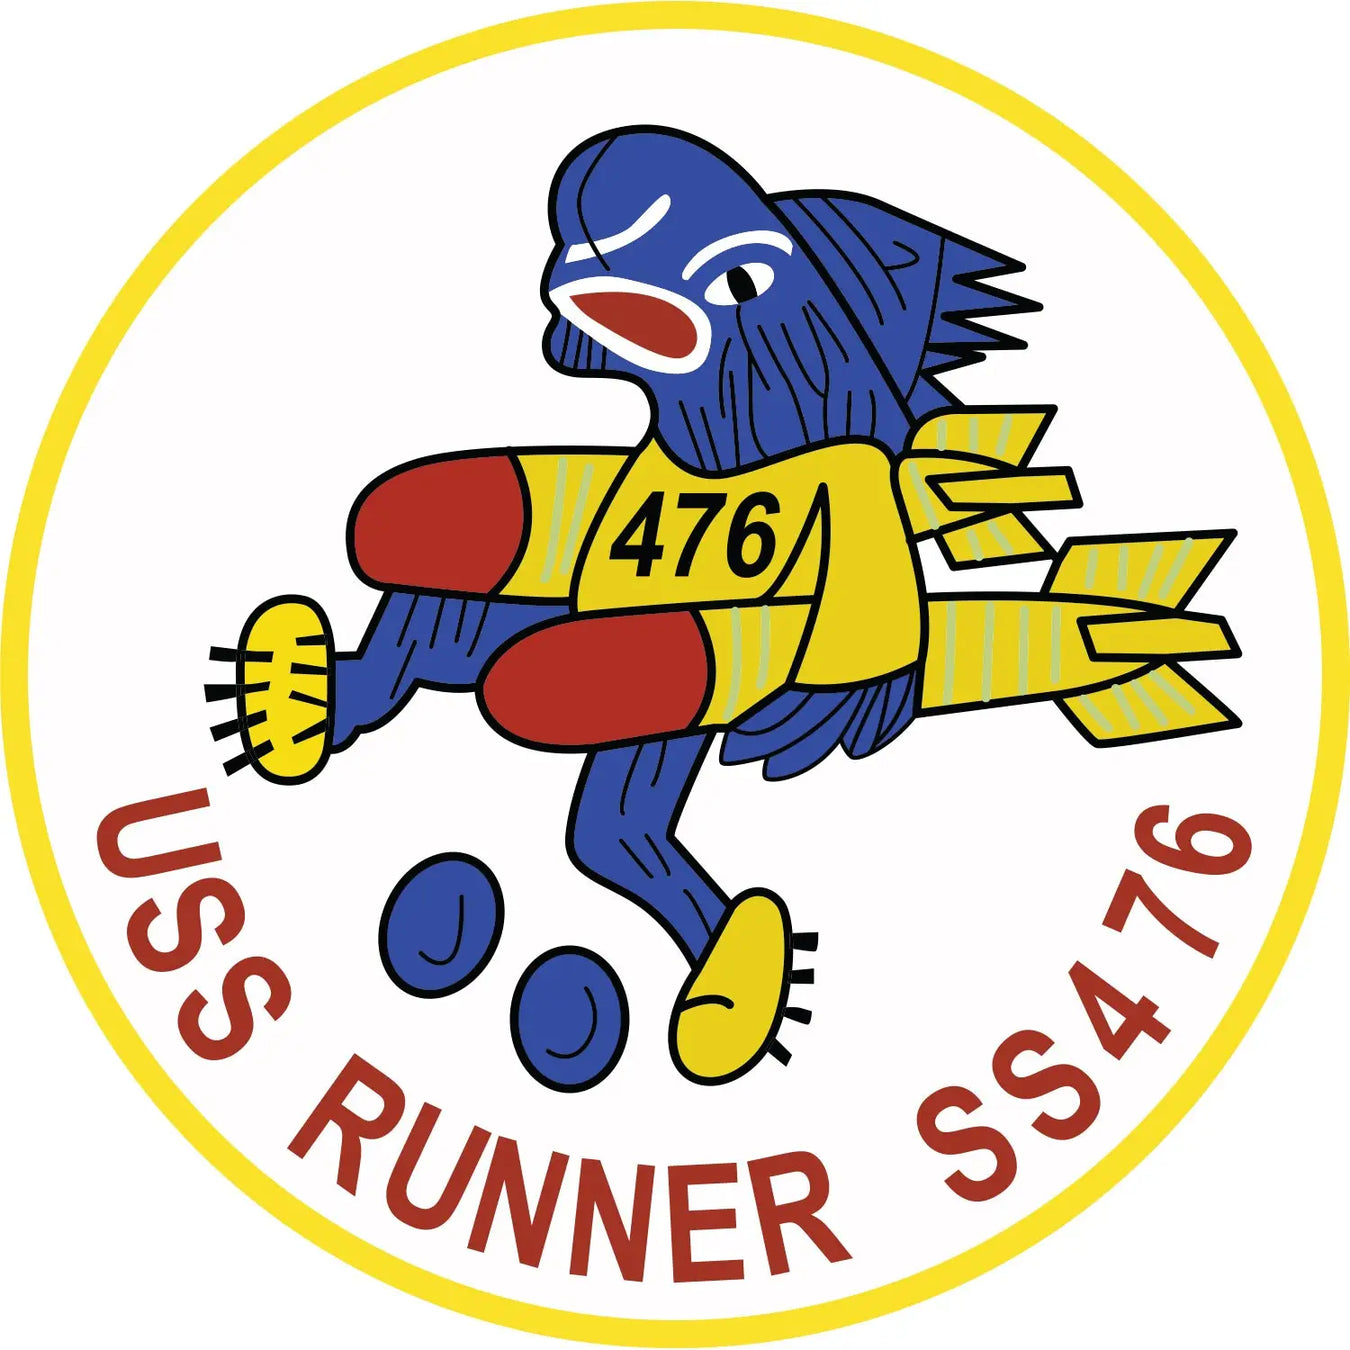 USS Runner (SS-476)